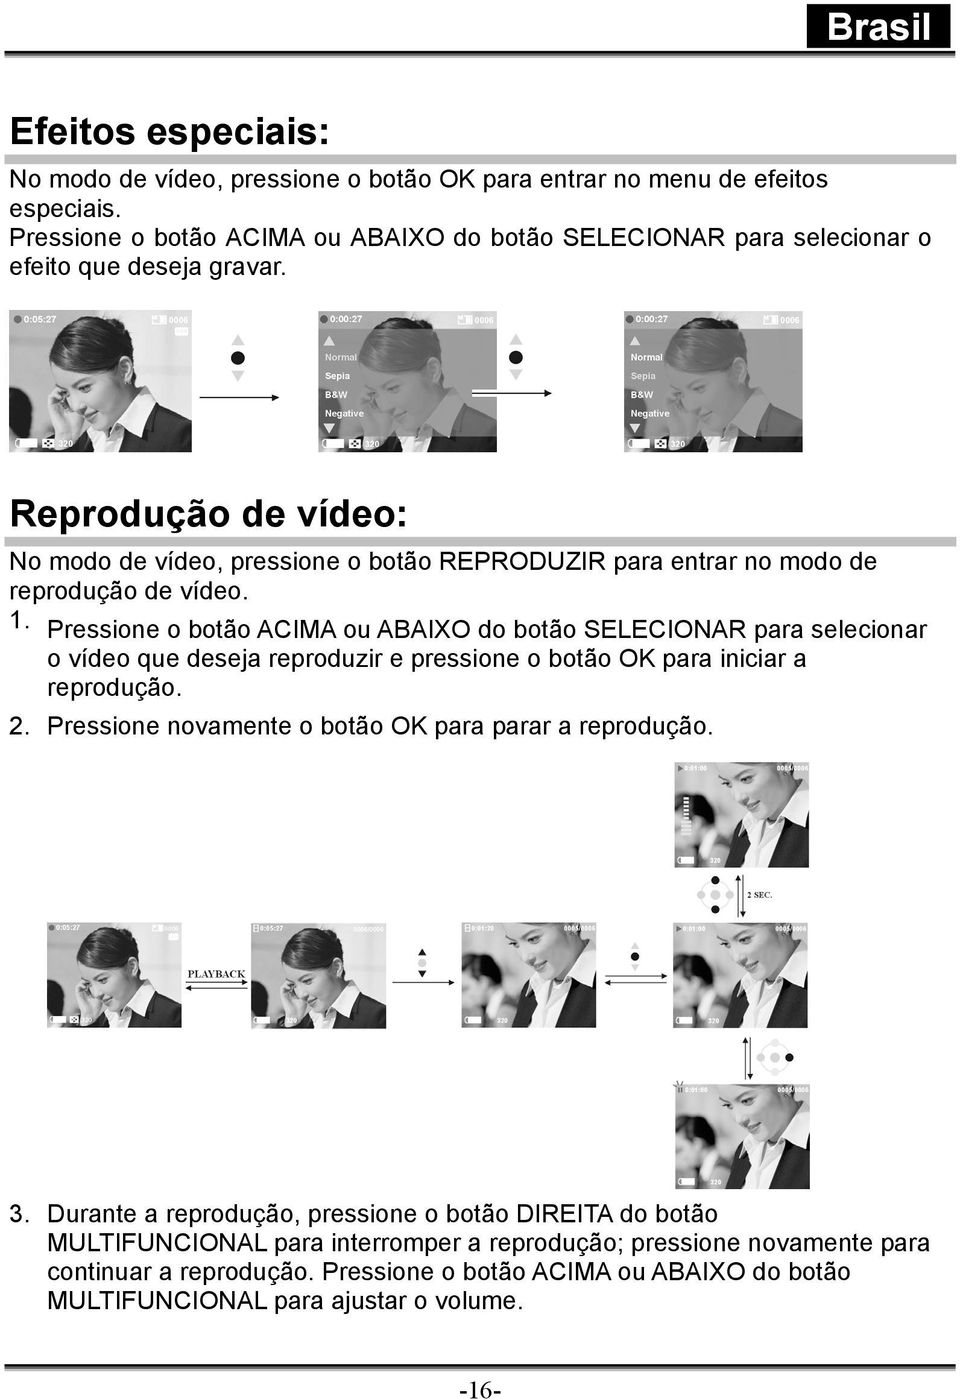 Reprodução de vídeo: No modo de vídeo, pressione o botão REPRODUZIR para entrar no modo de reprodução de vídeo.